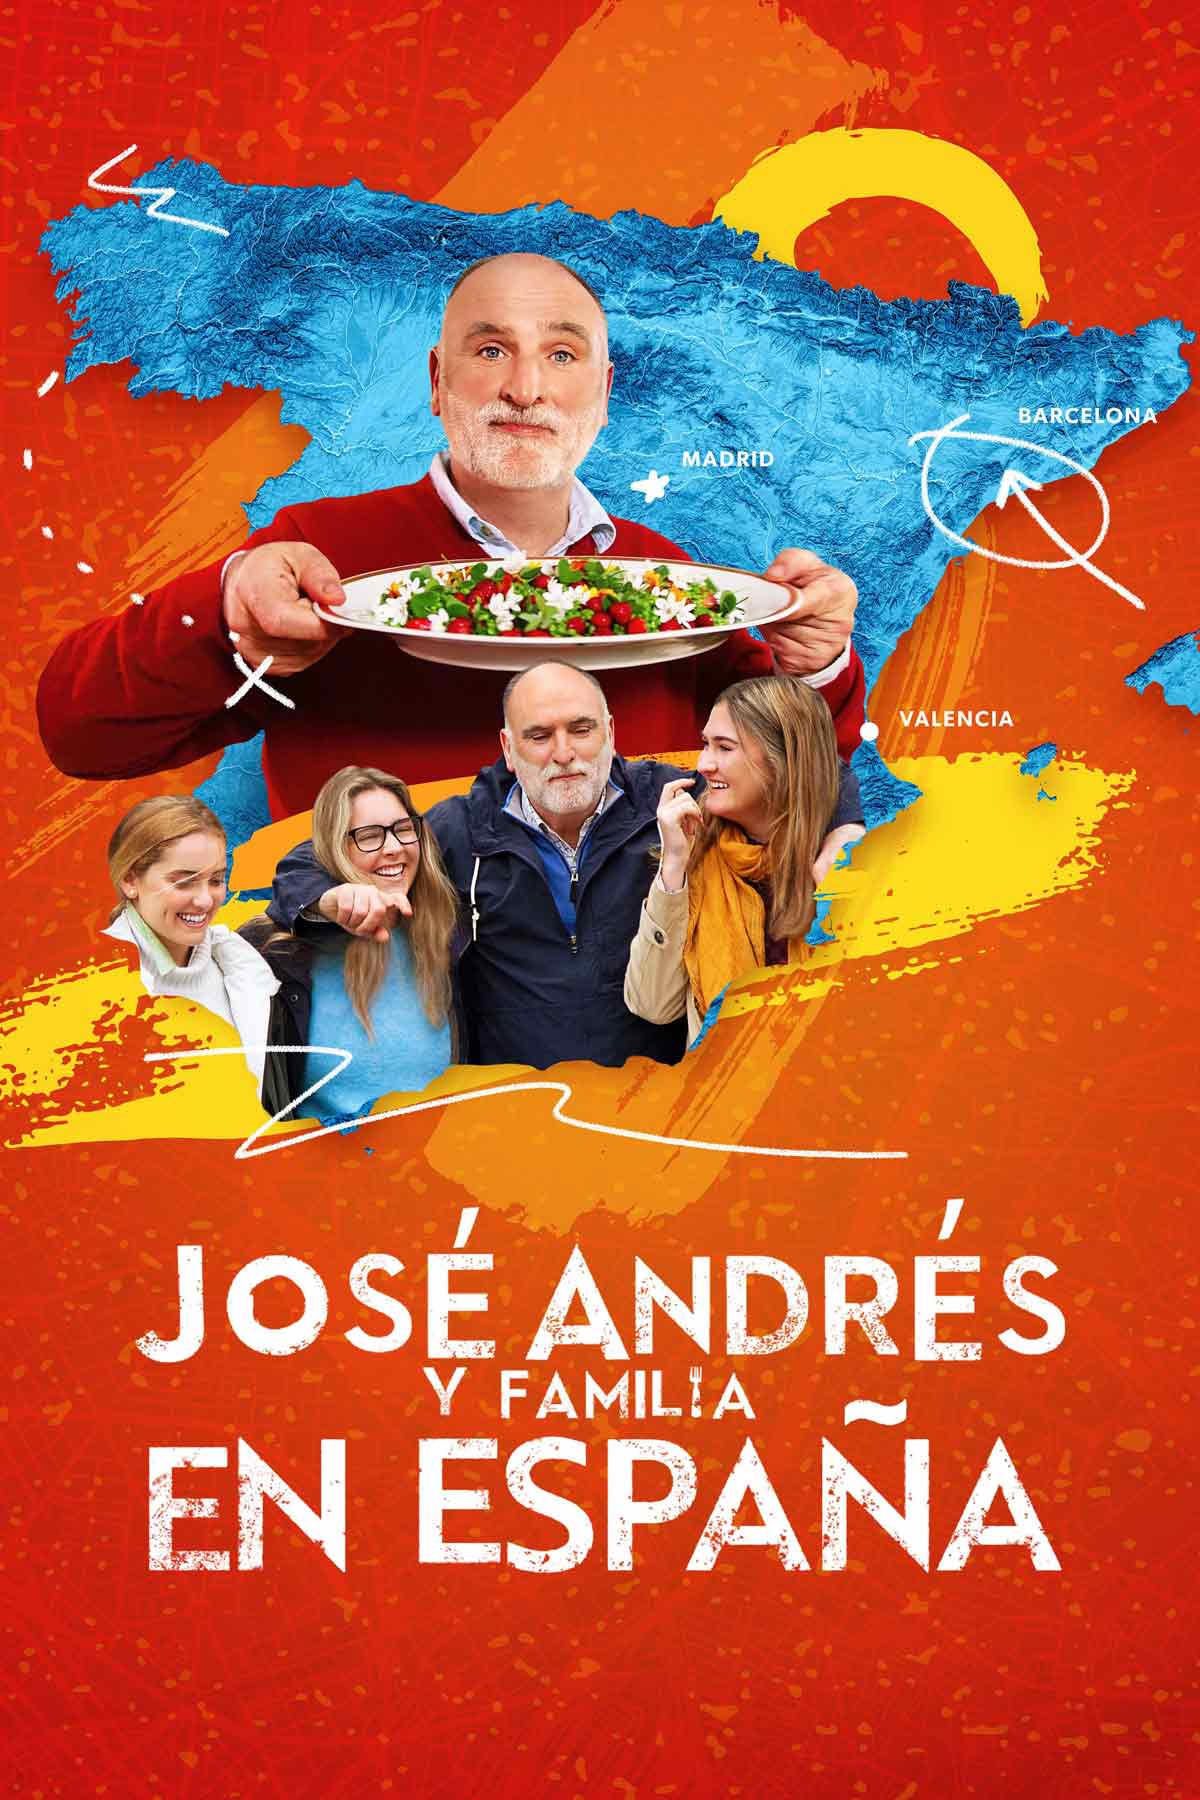 Jose Andrés y familia en España